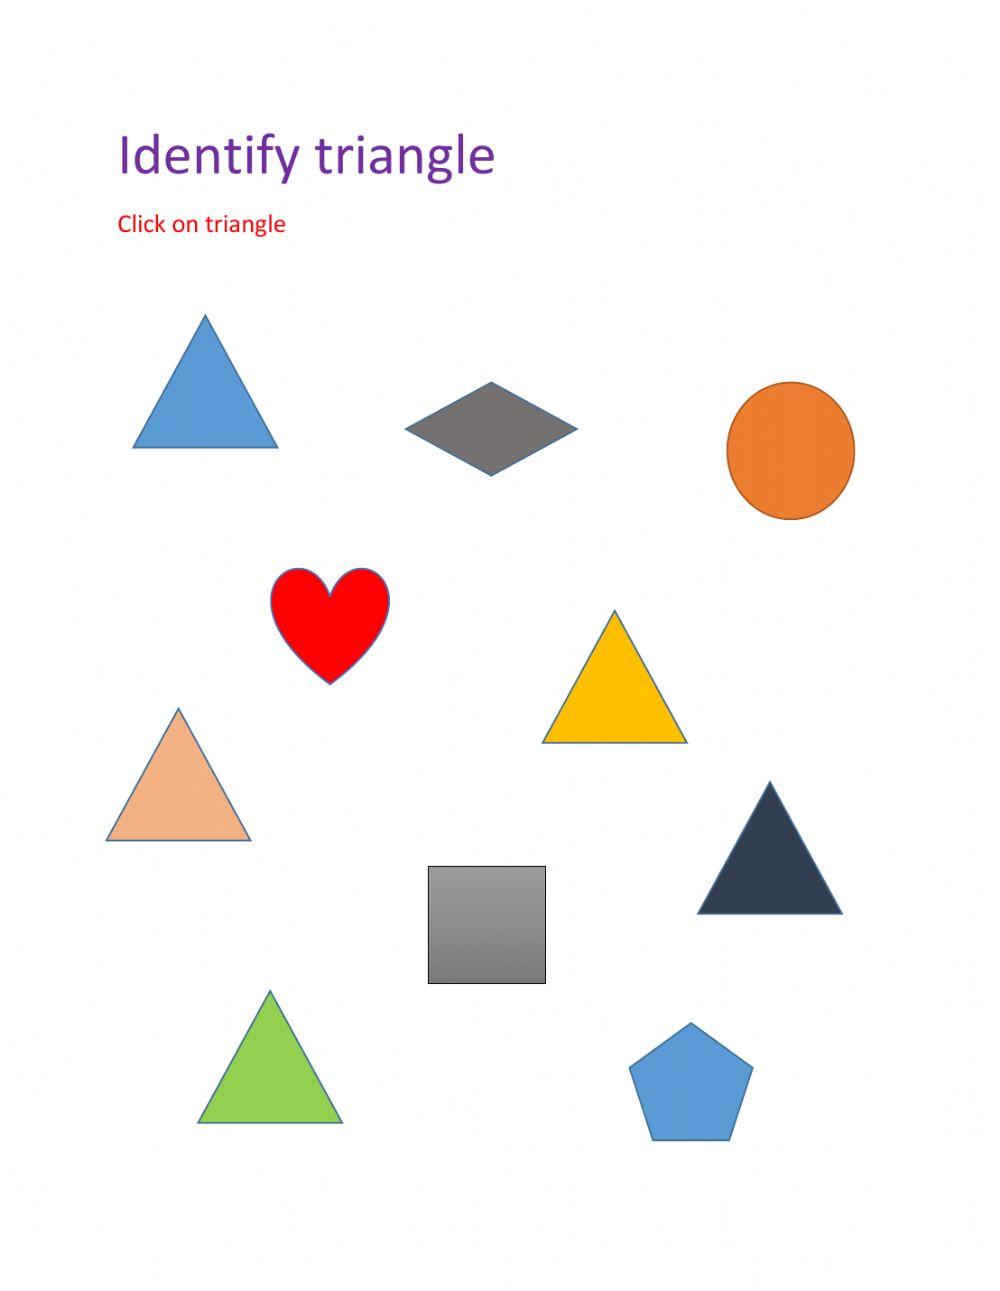 Identify triangle